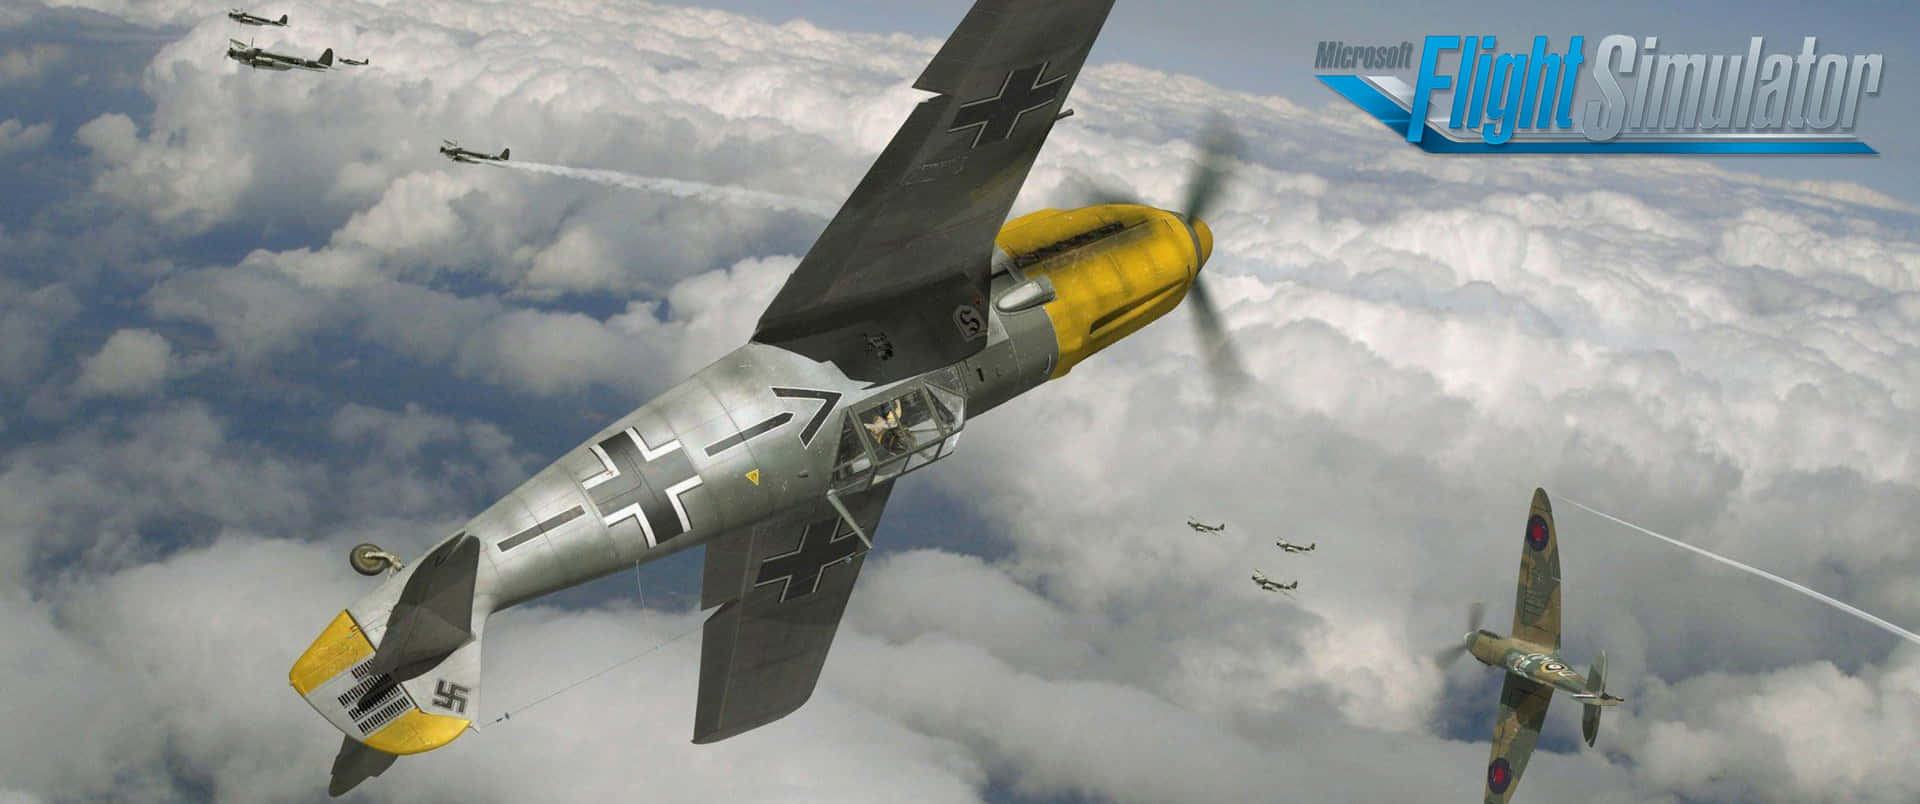 Volatra Le Nuvole Con Microsoft Flight Simulator